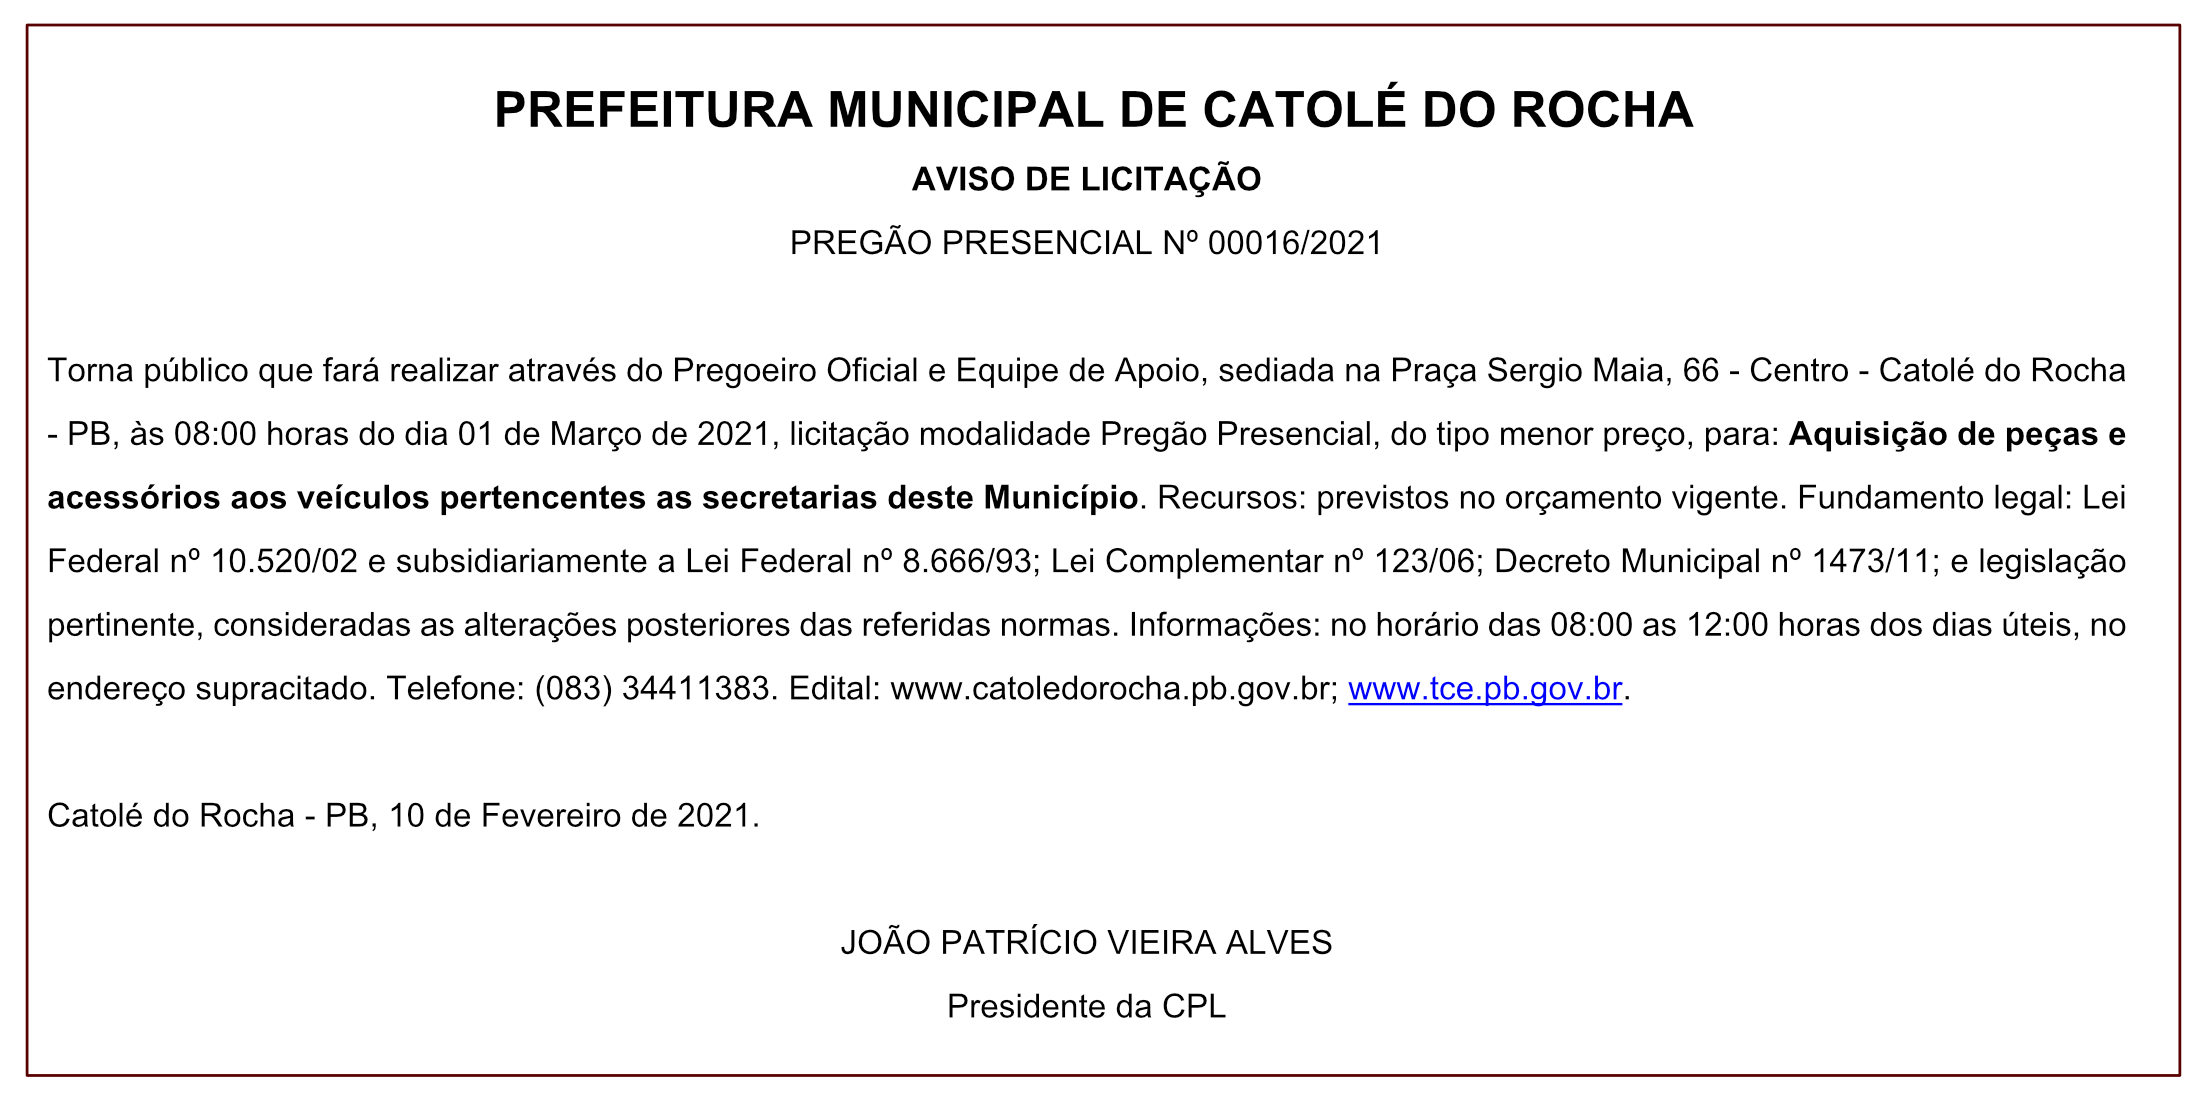 Prefeitura Municipal de Catolé do Rocha – AVISO DE LICITAÇÃO PREGÃO PRESENCIAL Nº 00016/2021